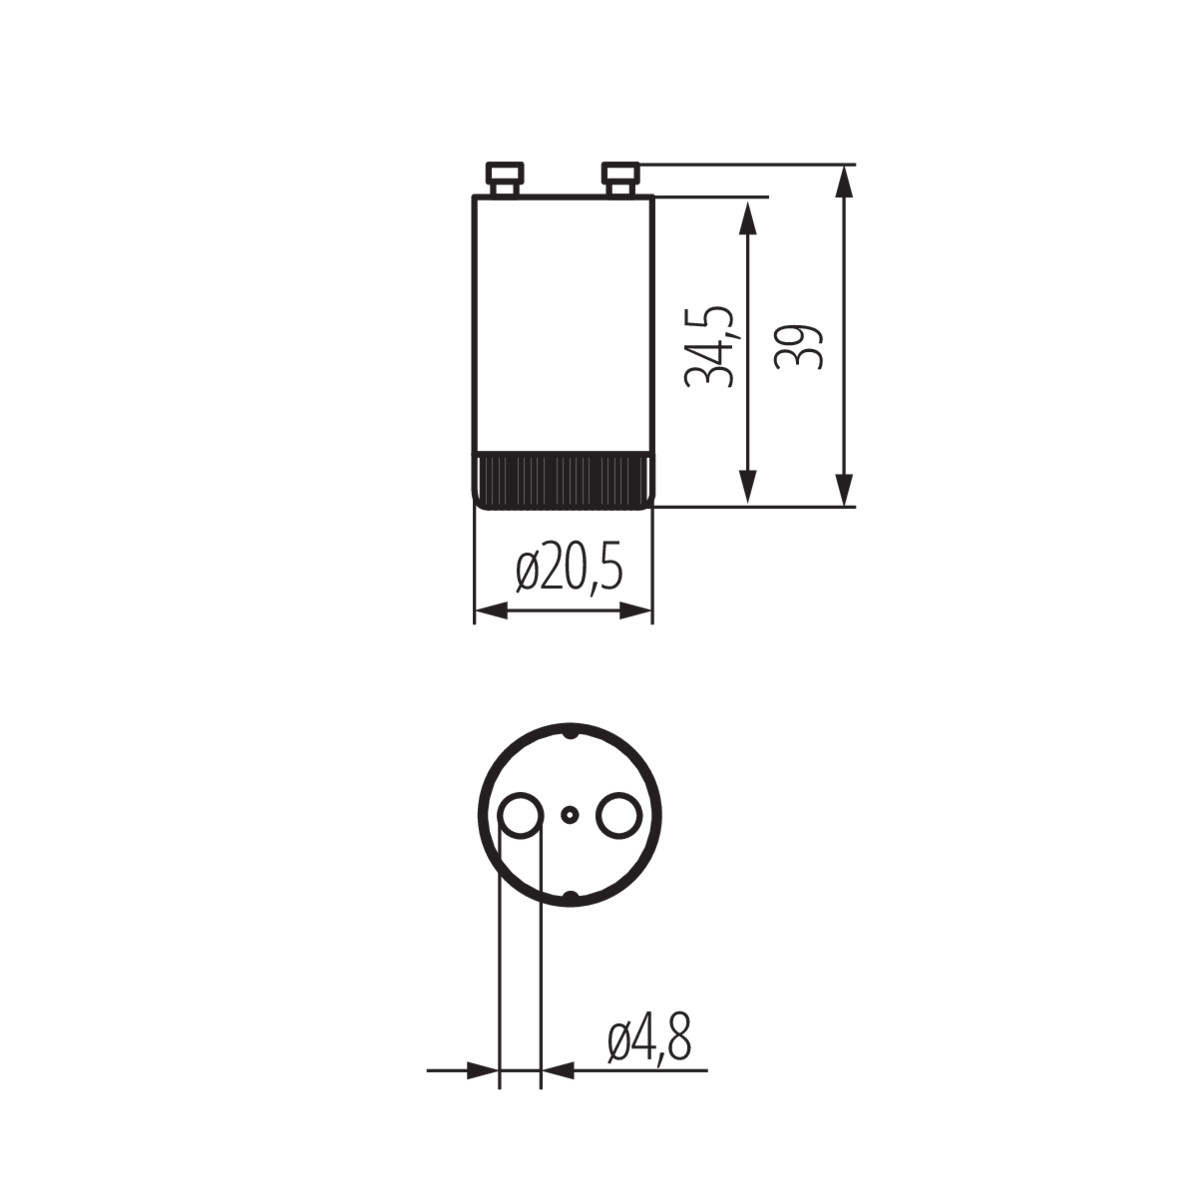 Kanlux Starter/Leuchtstoffröhren BS-2 4-65W